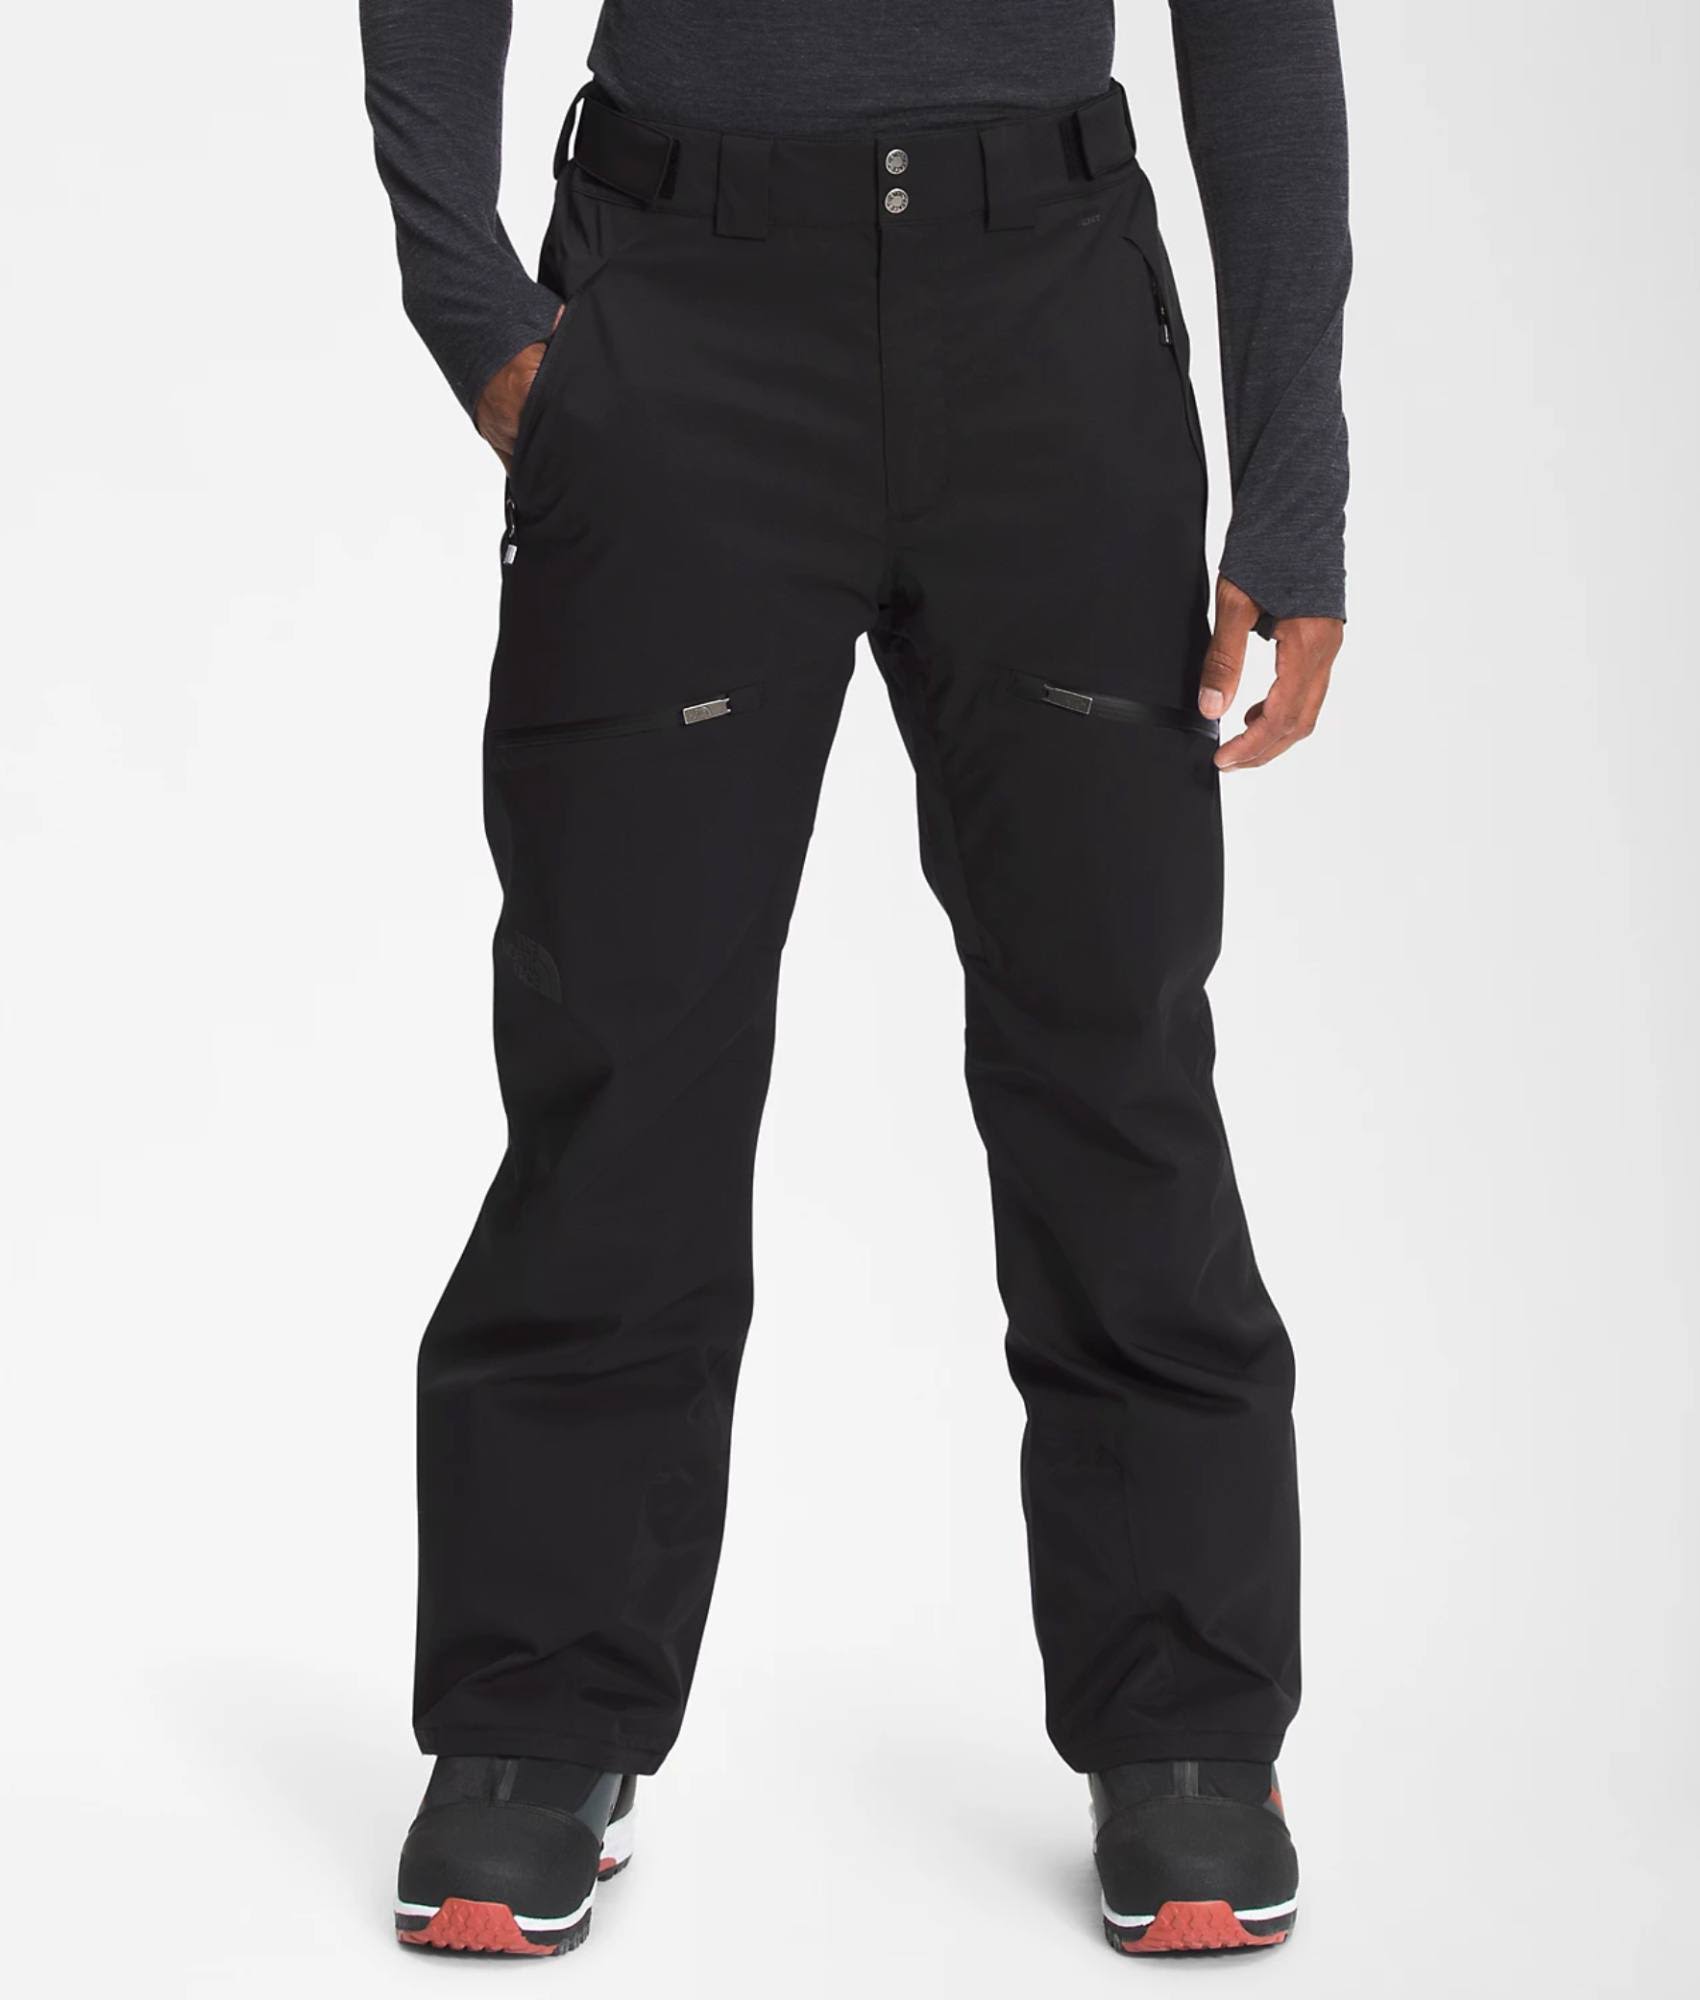 The North Face Chakal Pant Ski trousers (M - Regular, black)